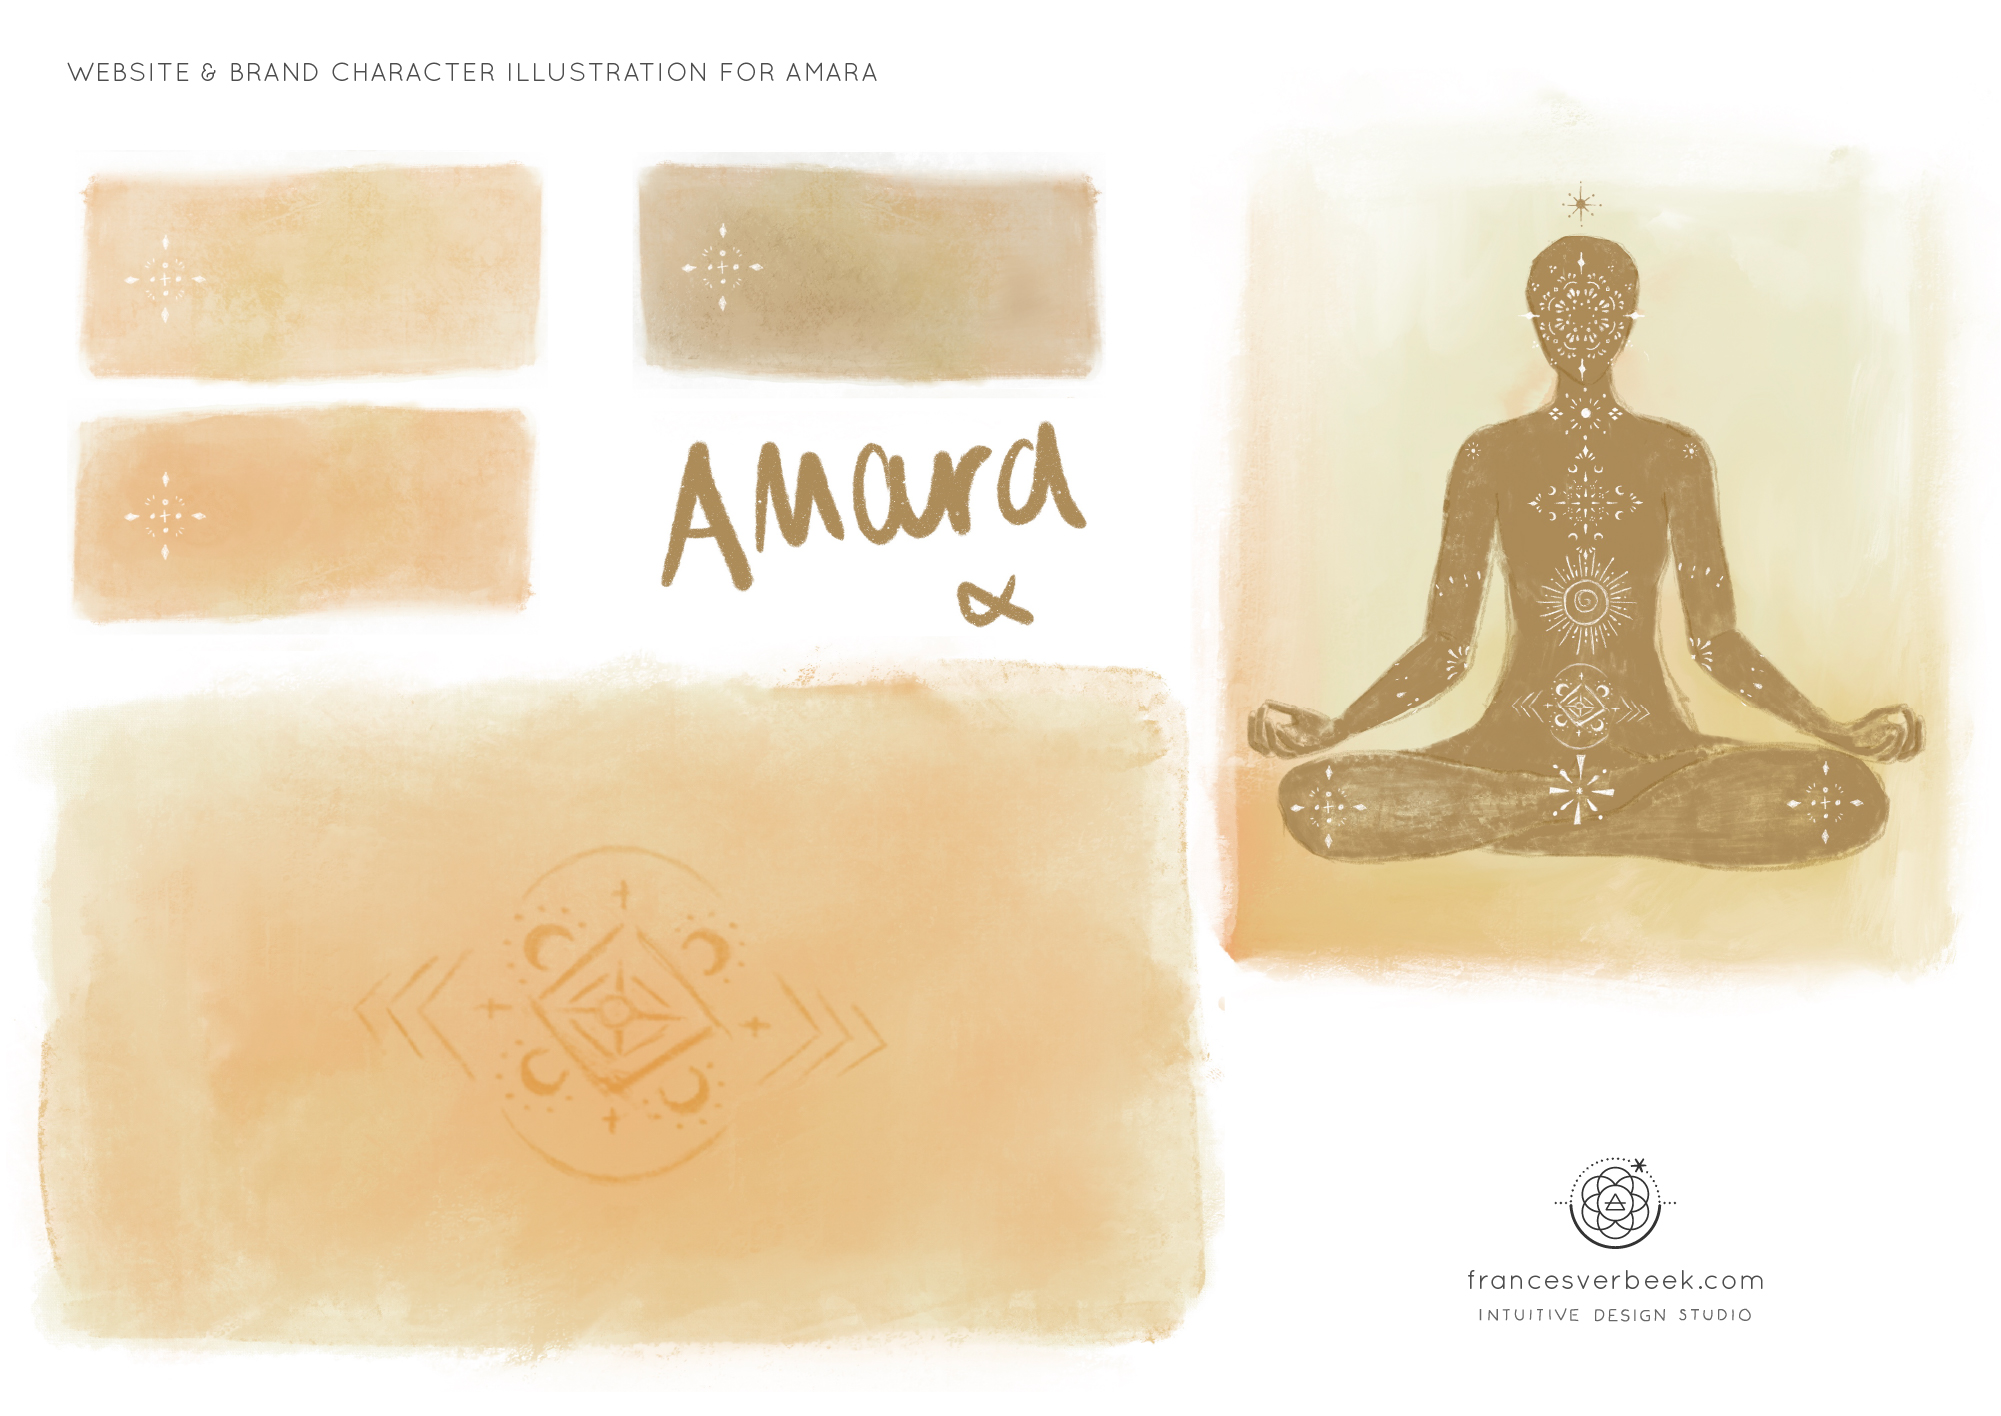 Amara illustration by Frances Verbeek